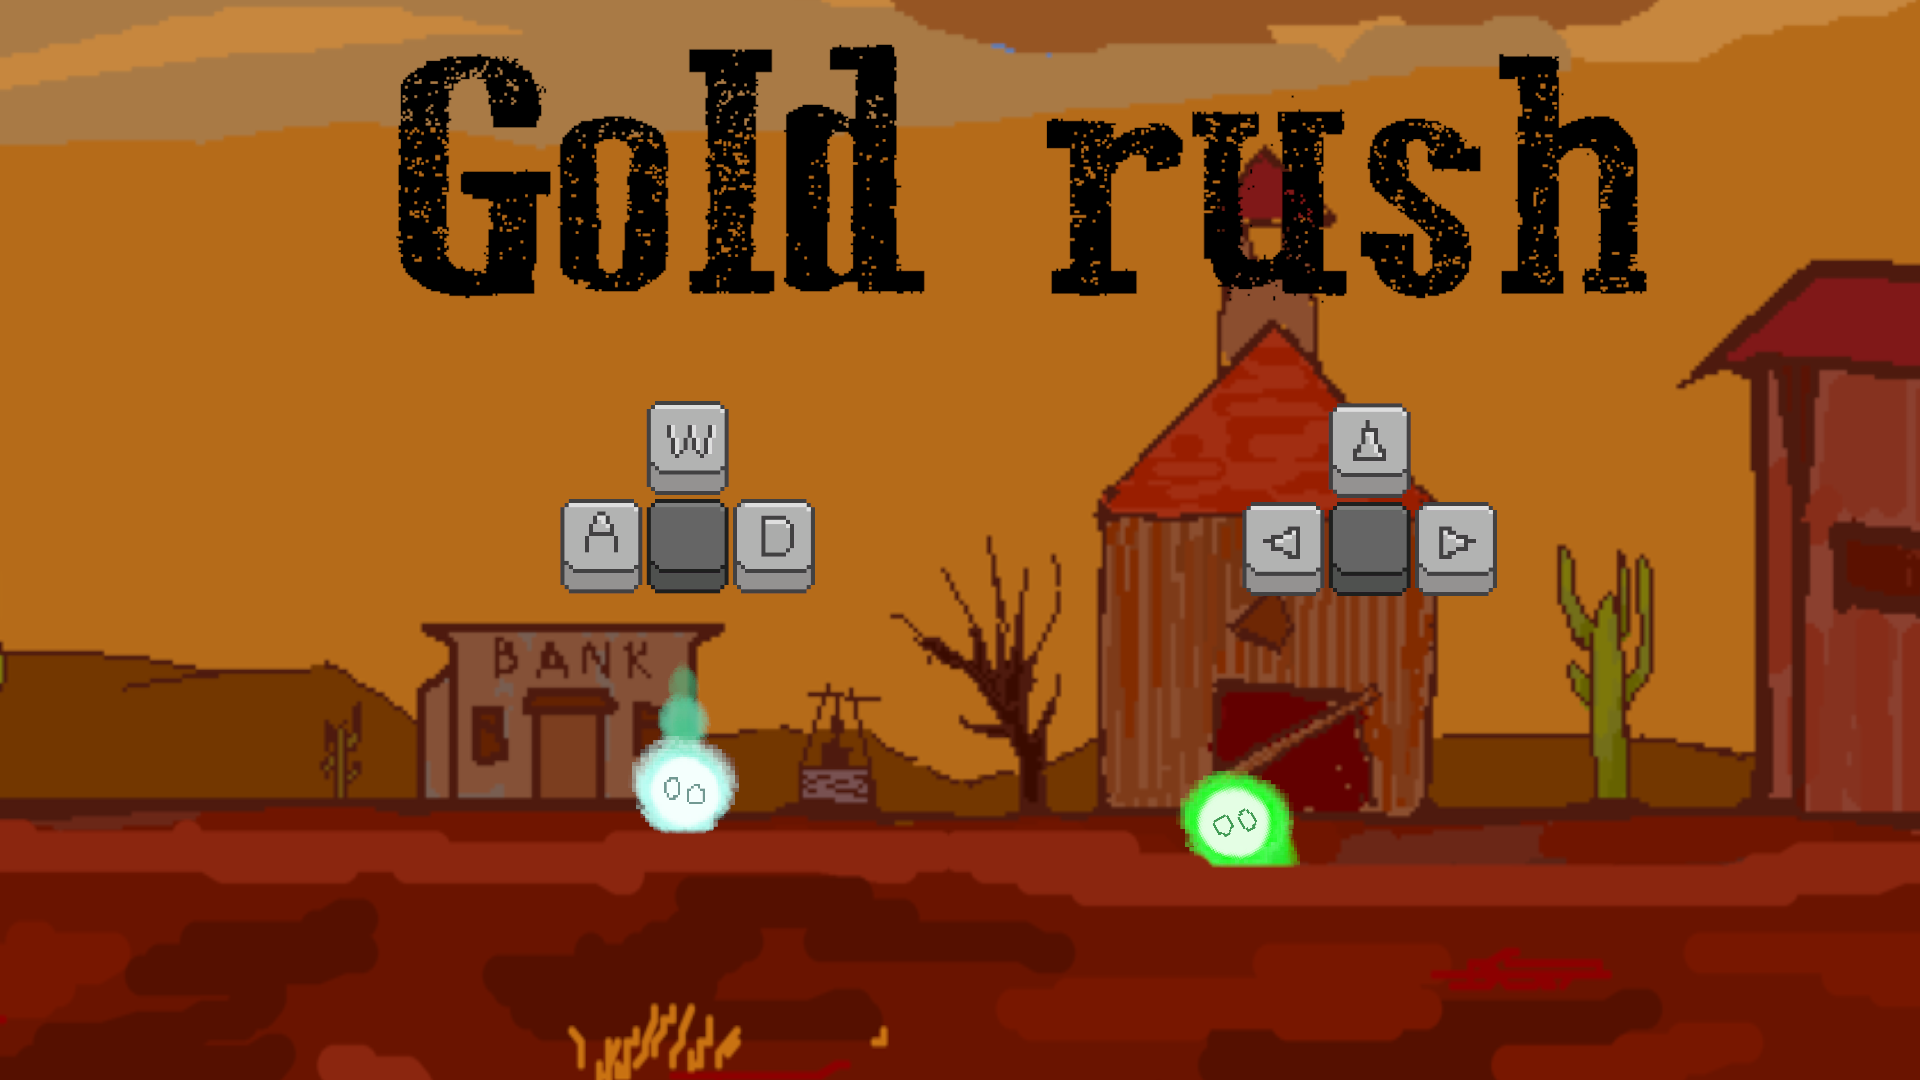 Gold rush